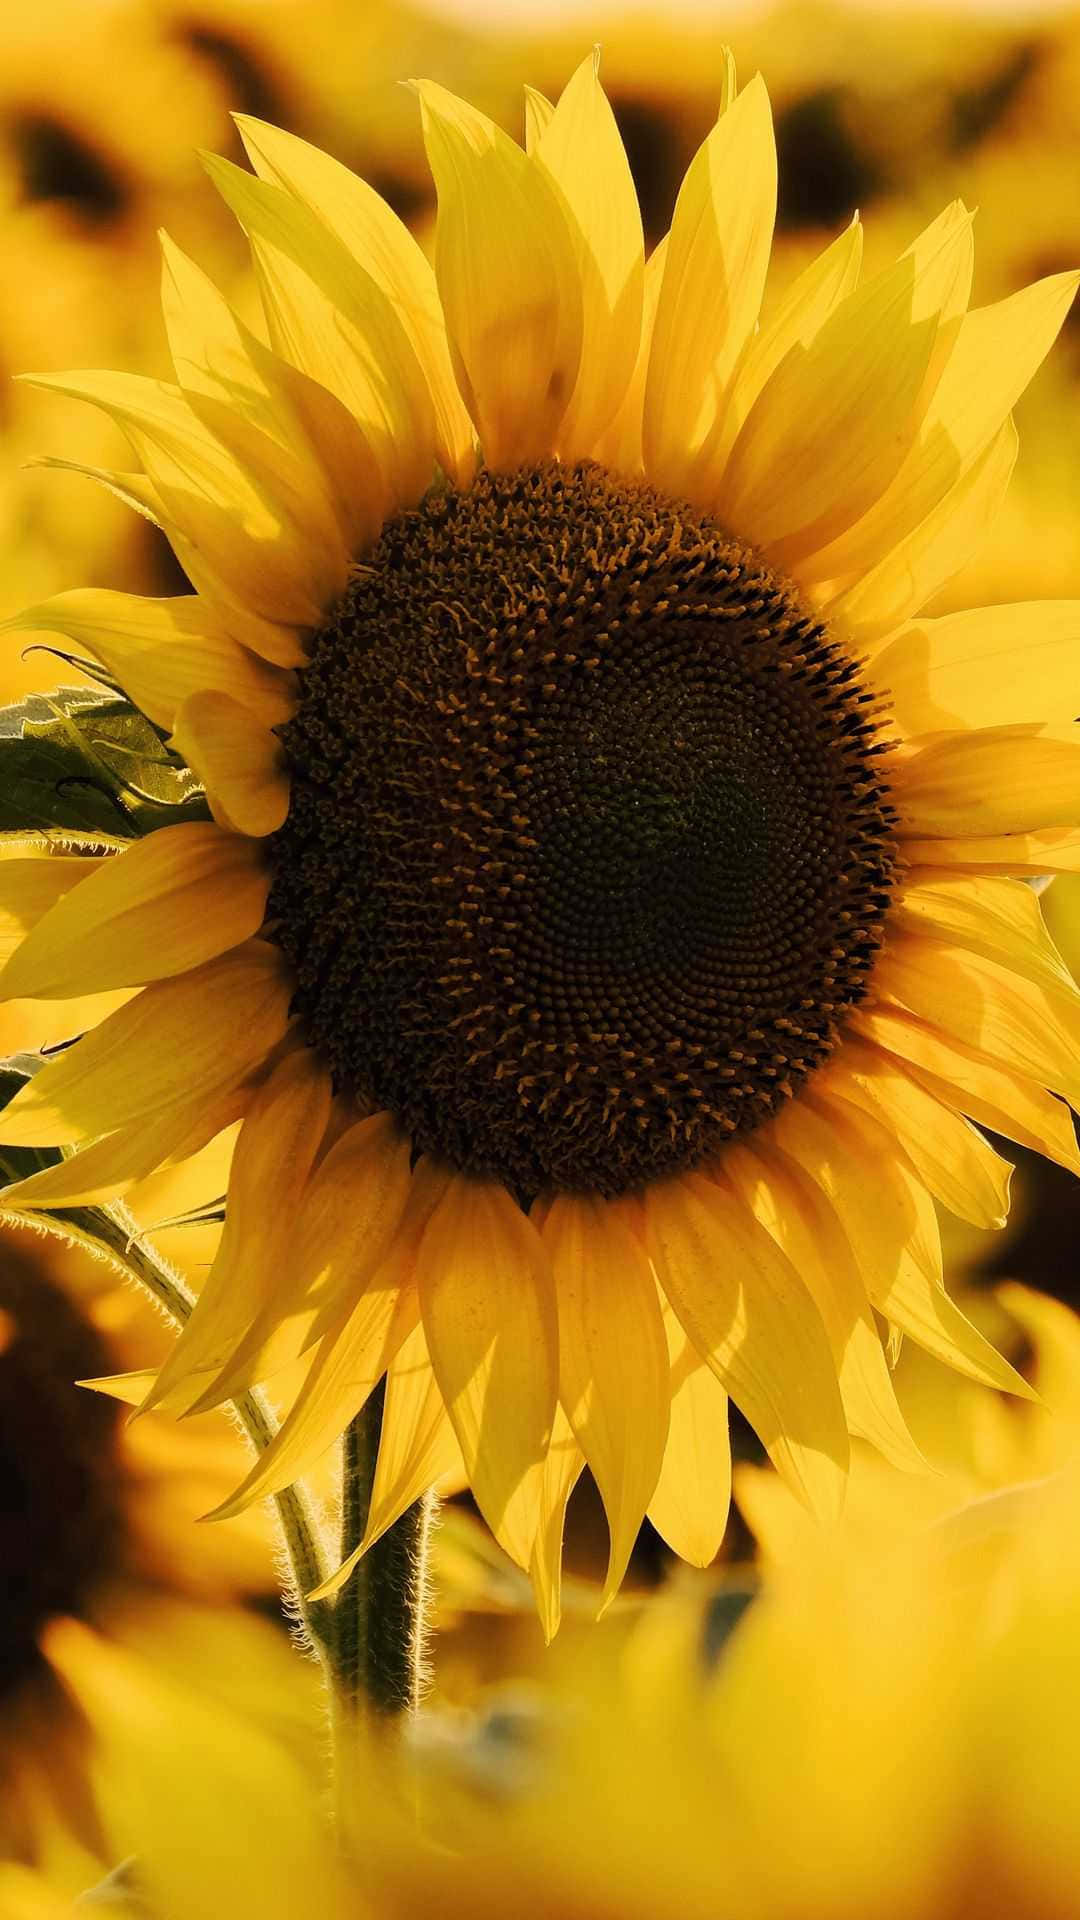 Ungirasol En Pie Orgulloso Y Alto Frente A Un Hermoso Campo De Flores Silvestres Amarillas. Fondo de pantalla